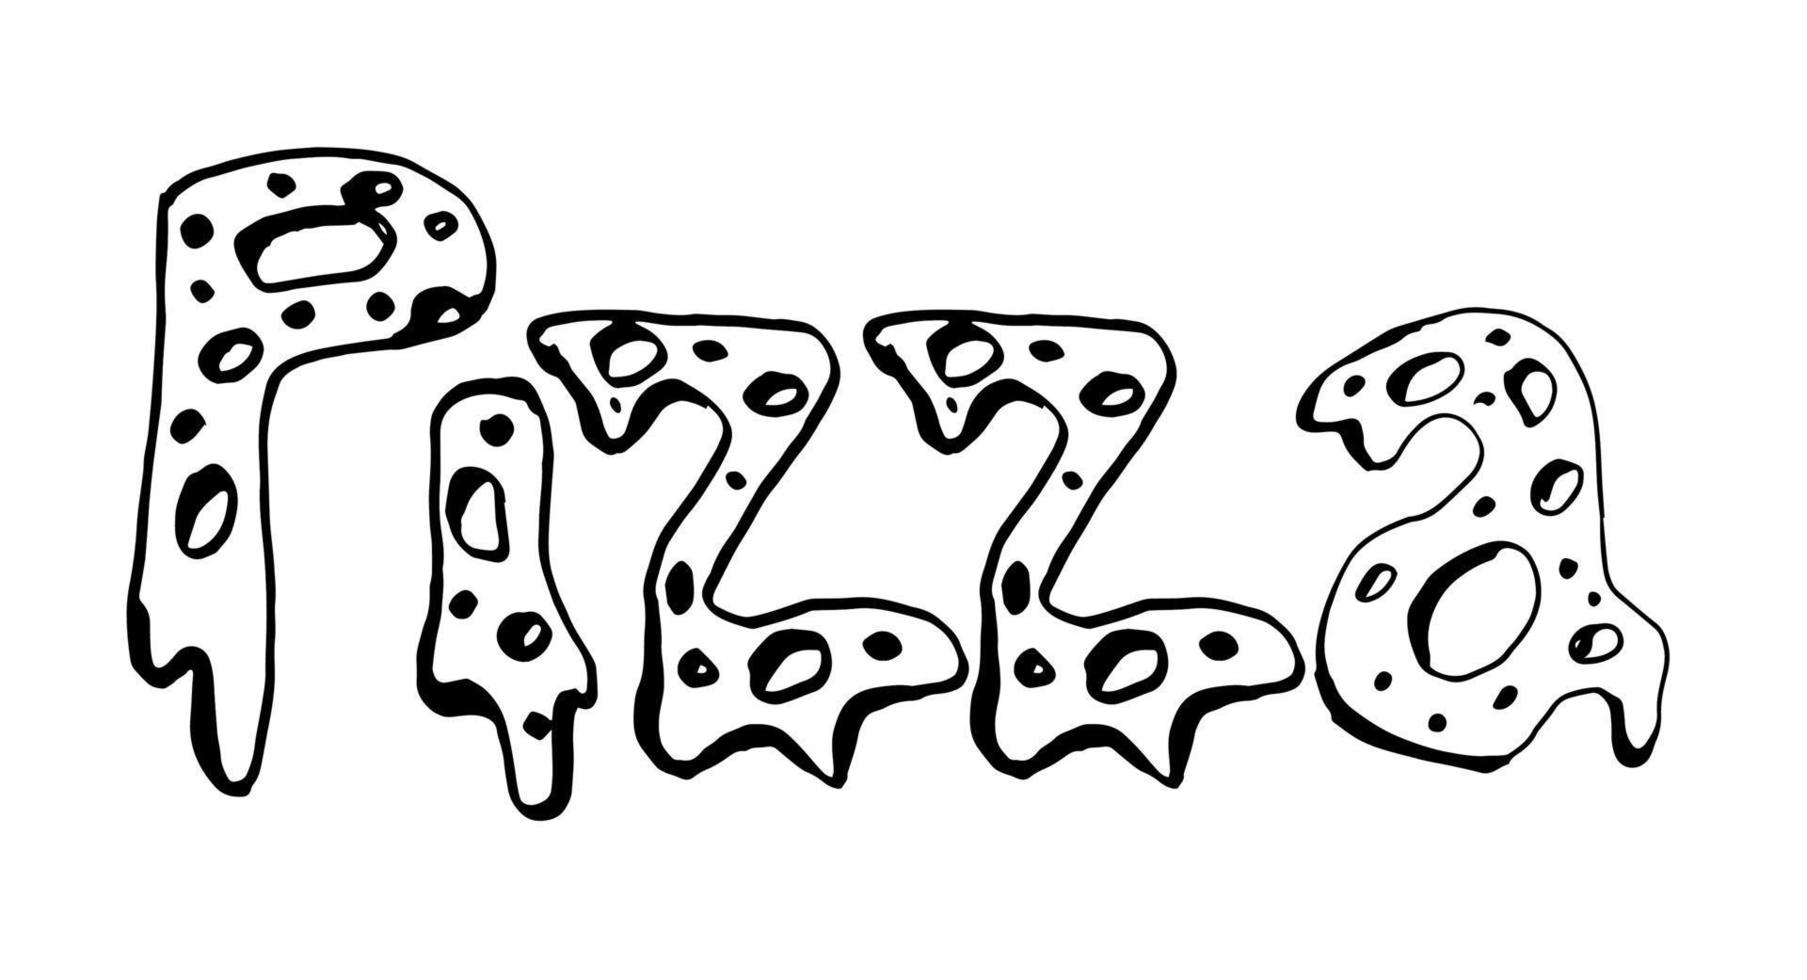 dibujo vectorial de pizza texto aislado sobre fondo blanco vector